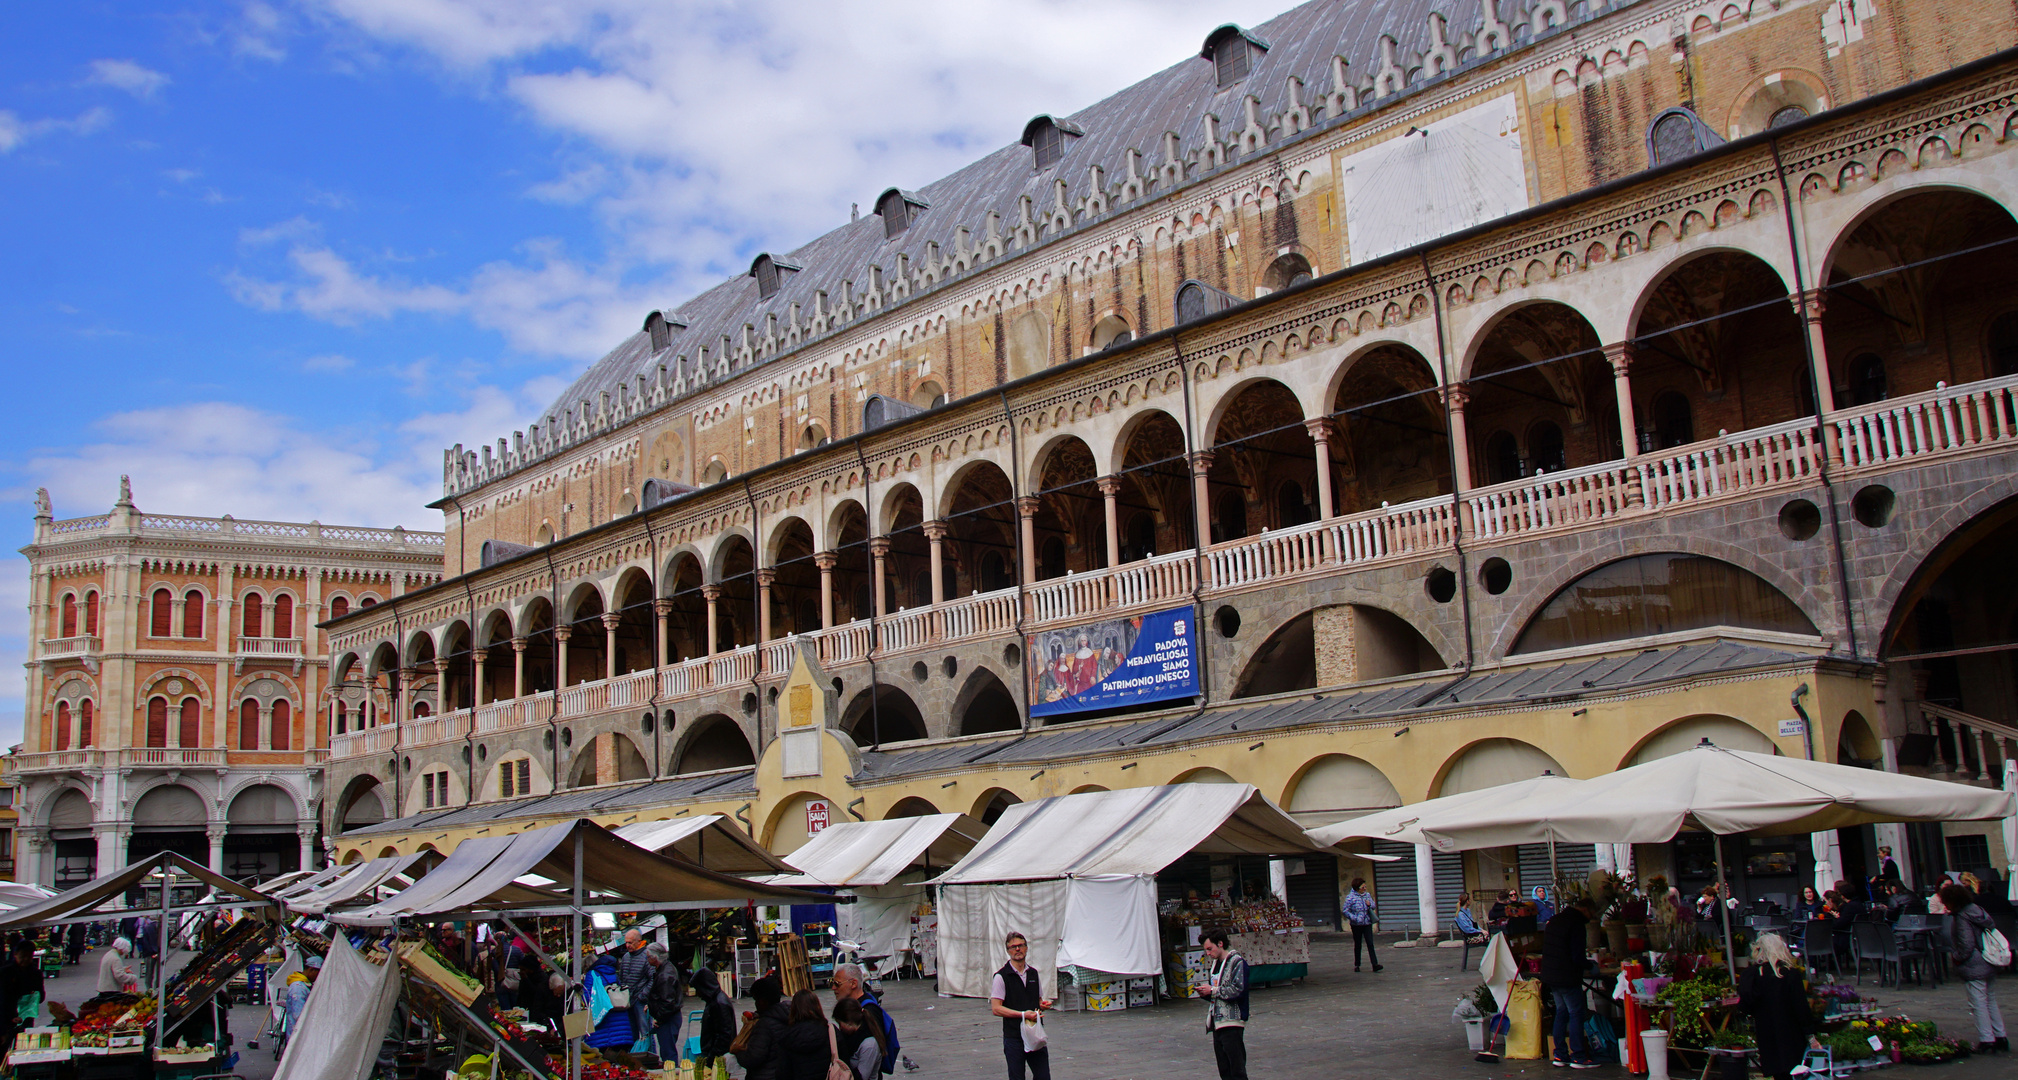 Wochenmarkt am Palazzo della Ragione